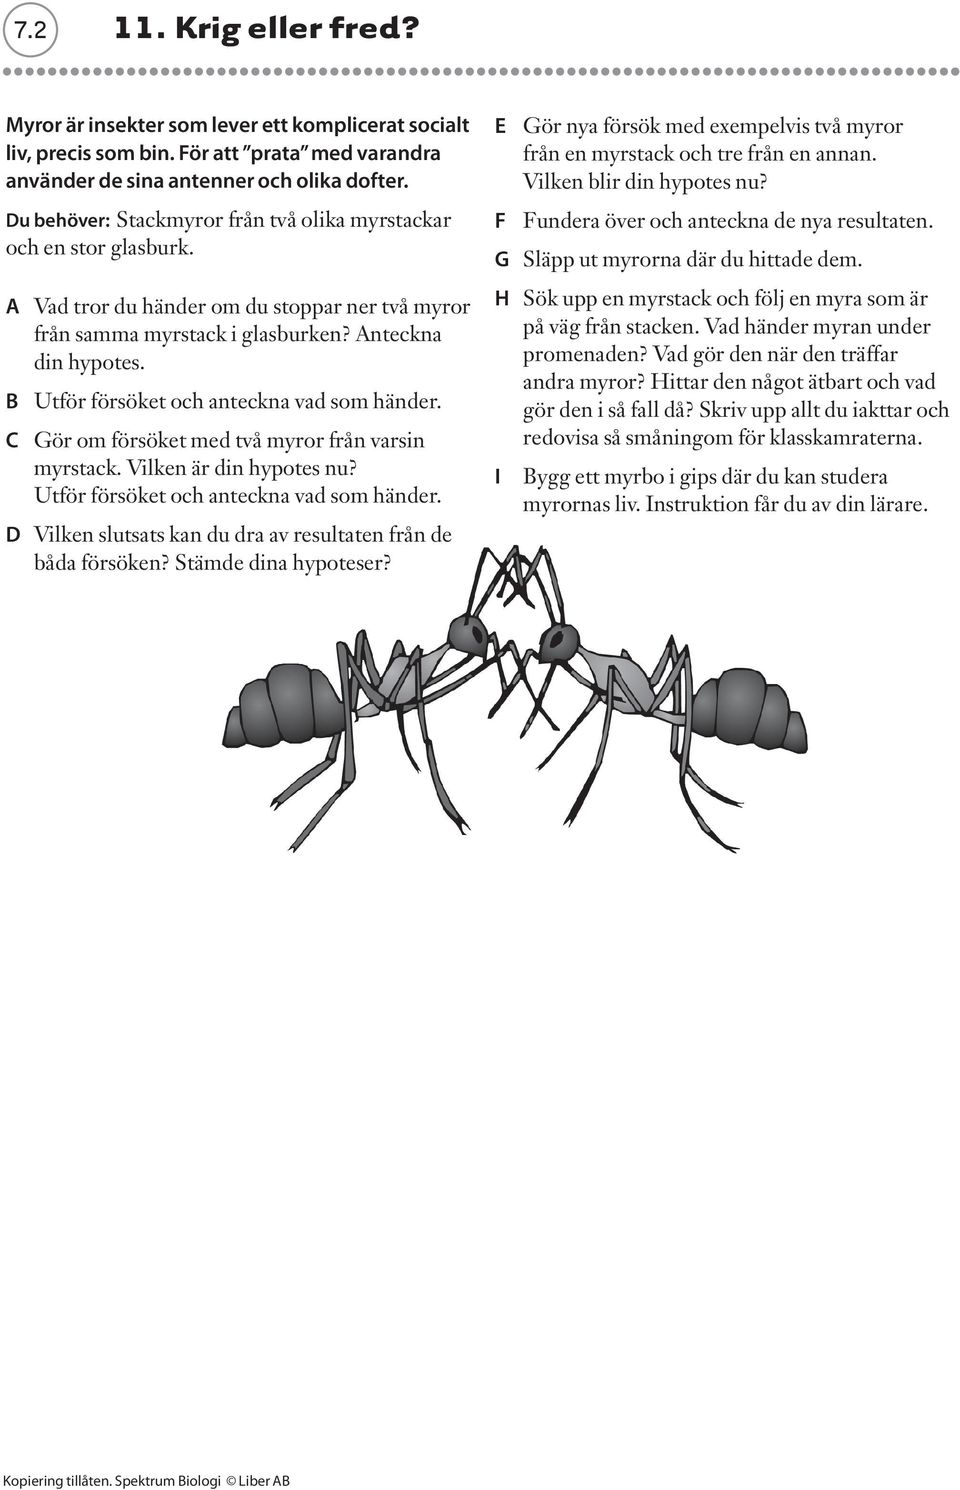 B Utför försöket och anteckna vad som händer. C Gör om försöket med två myror från varsin myrstack. Vilken är din hypotes nu? Utför försöket och anteckna vad som händer. D Vilken slutsats kan du dra av resultaten från de båda försöken?